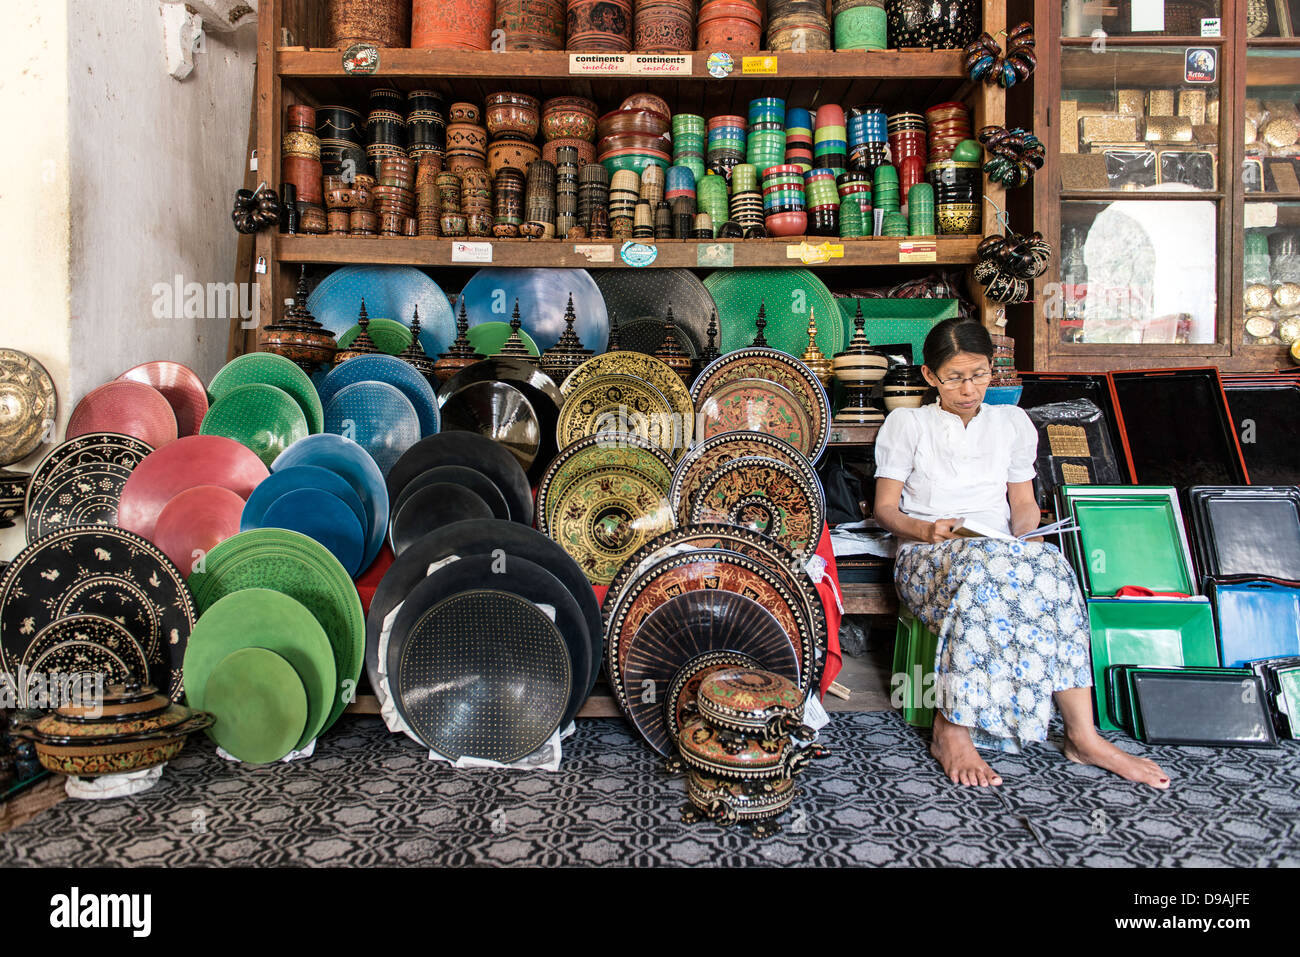 Vendeur de rue de l'artisanat Bagan Myanmar Birmanie Asie du sud-est Banque D'Images